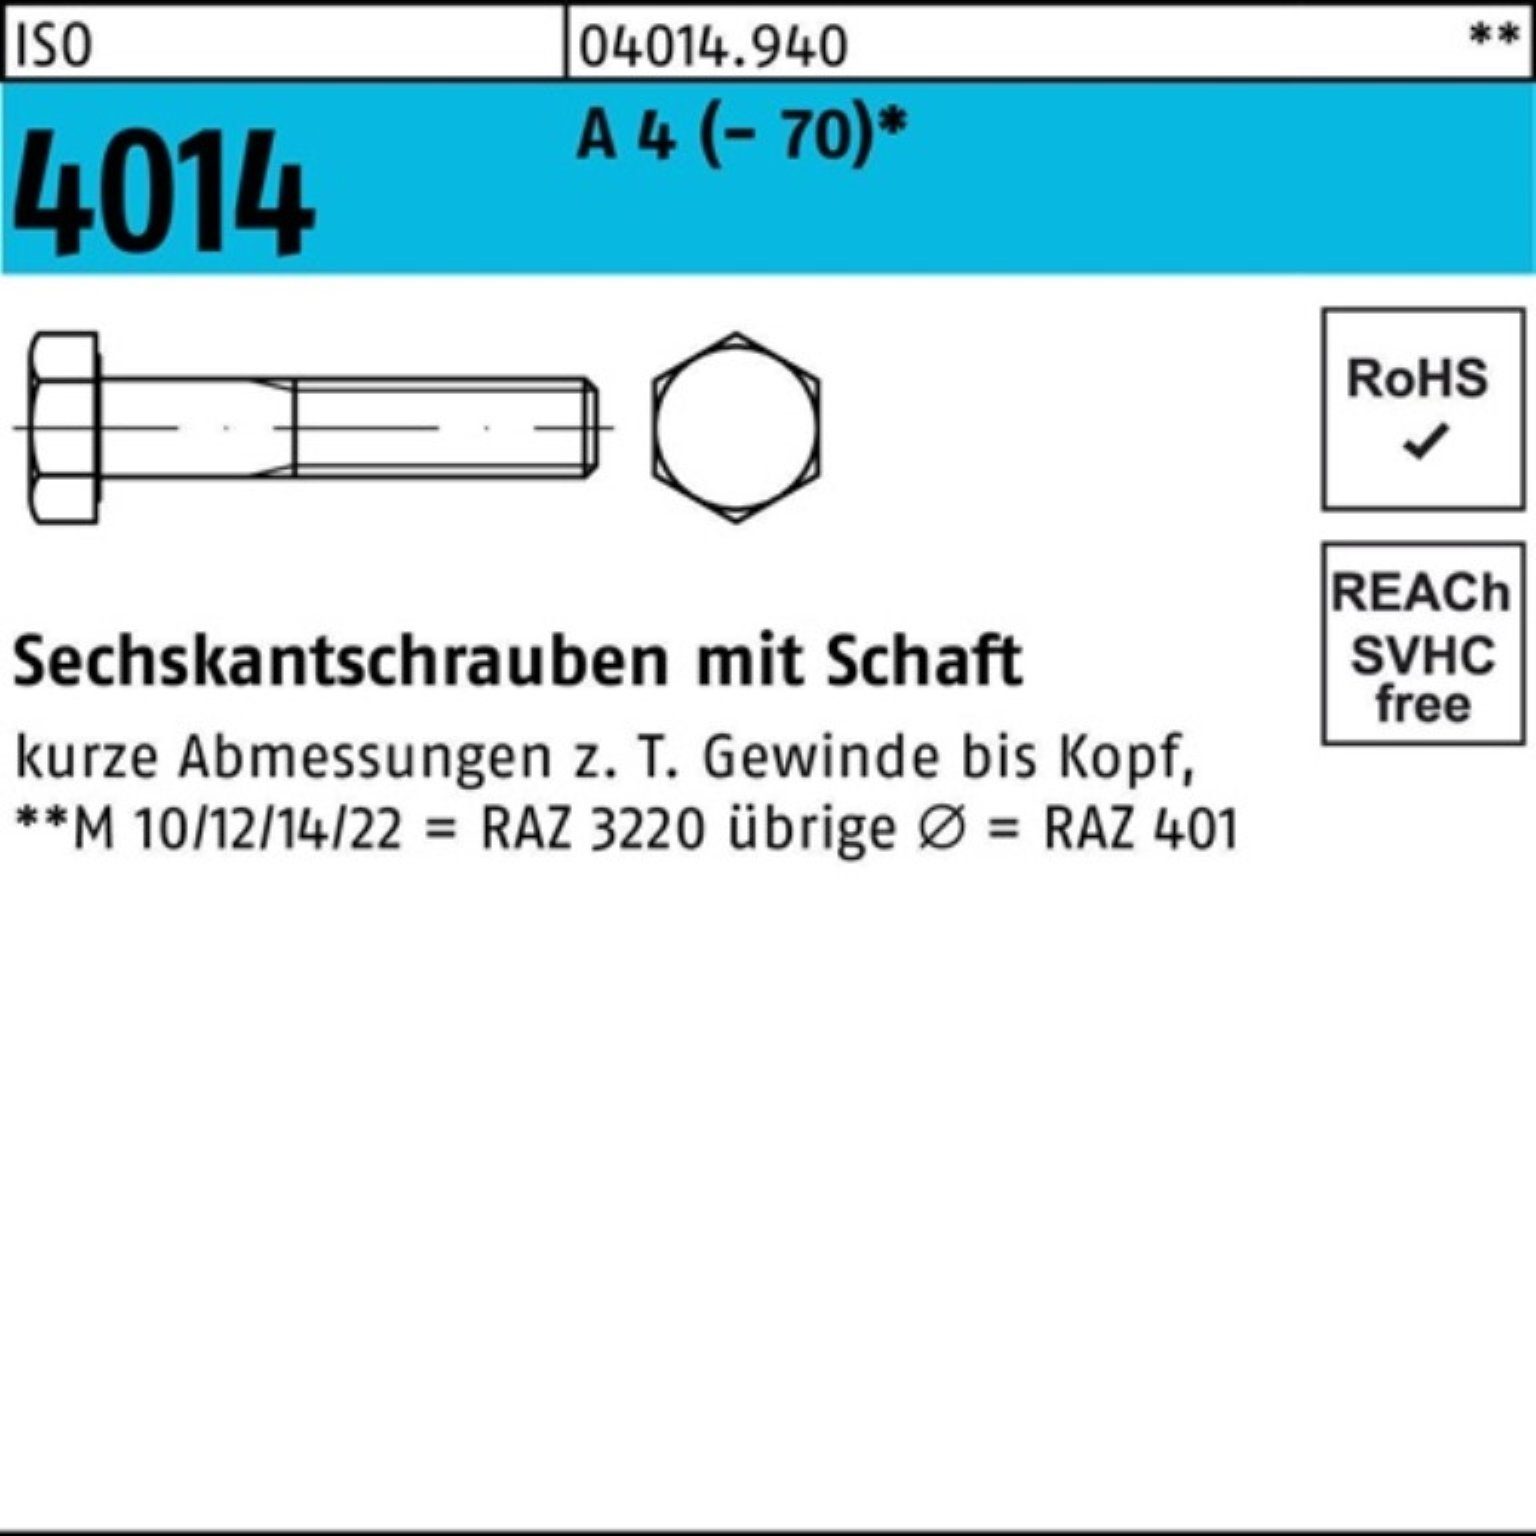 Sechskantschraube A Bufab 1 St 4014 M18x Schaft Pack 4 190 100er (70) Sechskantschraube ISO